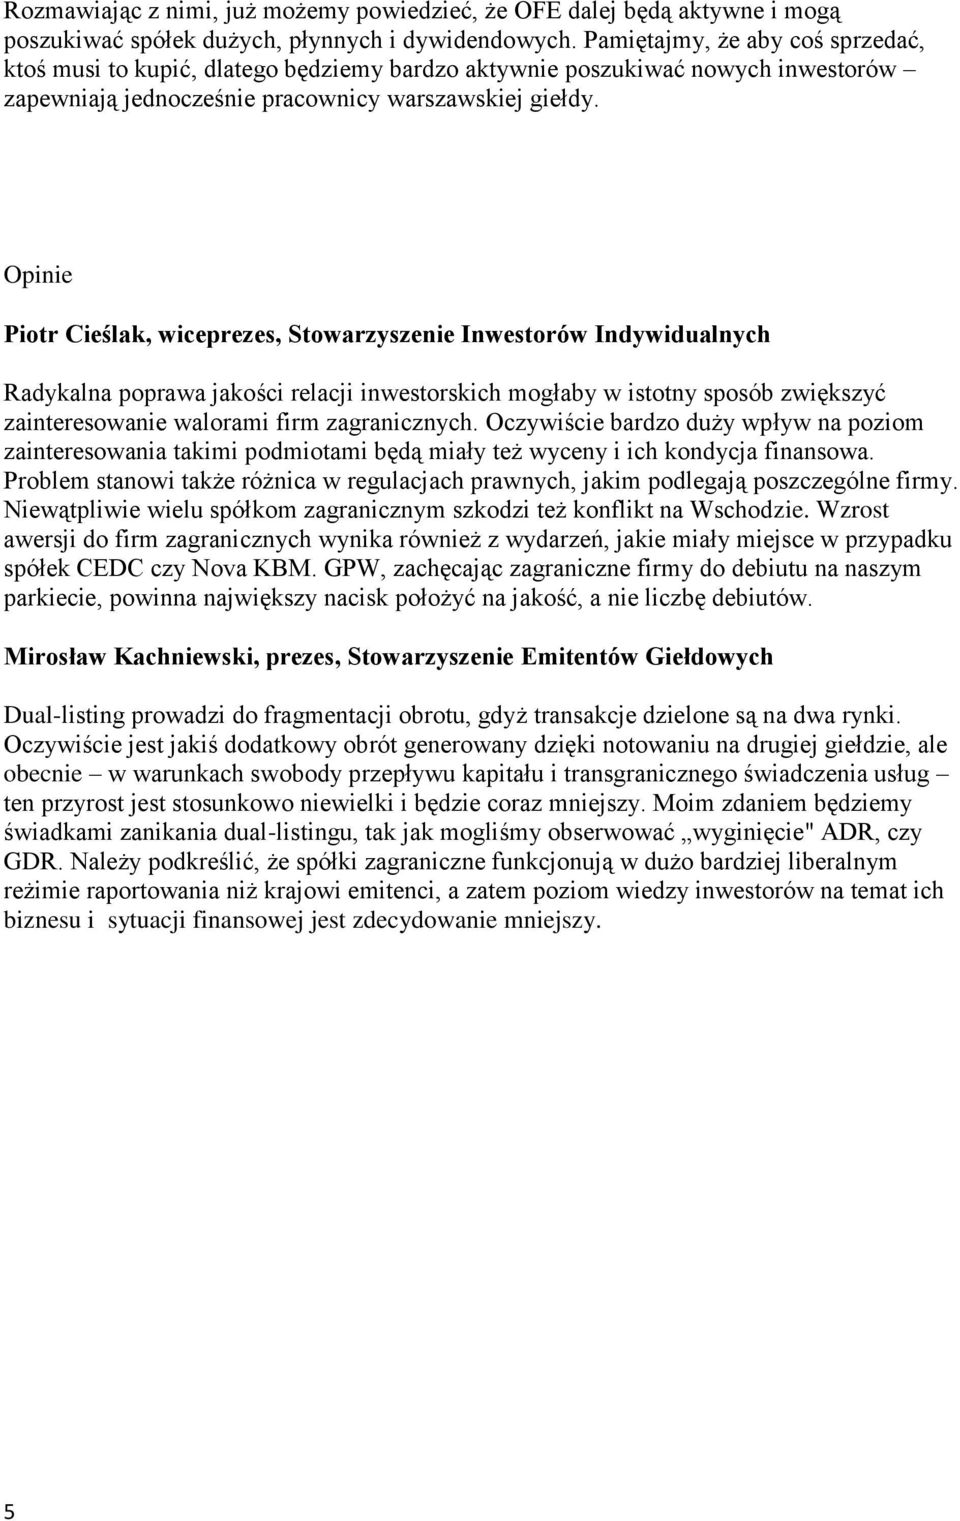 Opinie Piotr Cieślak, wiceprezes, Stowarzyszenie Inwestorów Indywidualnych Radykalna poprawa jakości relacji inwestorskich mogłaby w istotny sposób zwiększyć zainteresowanie walorami firm